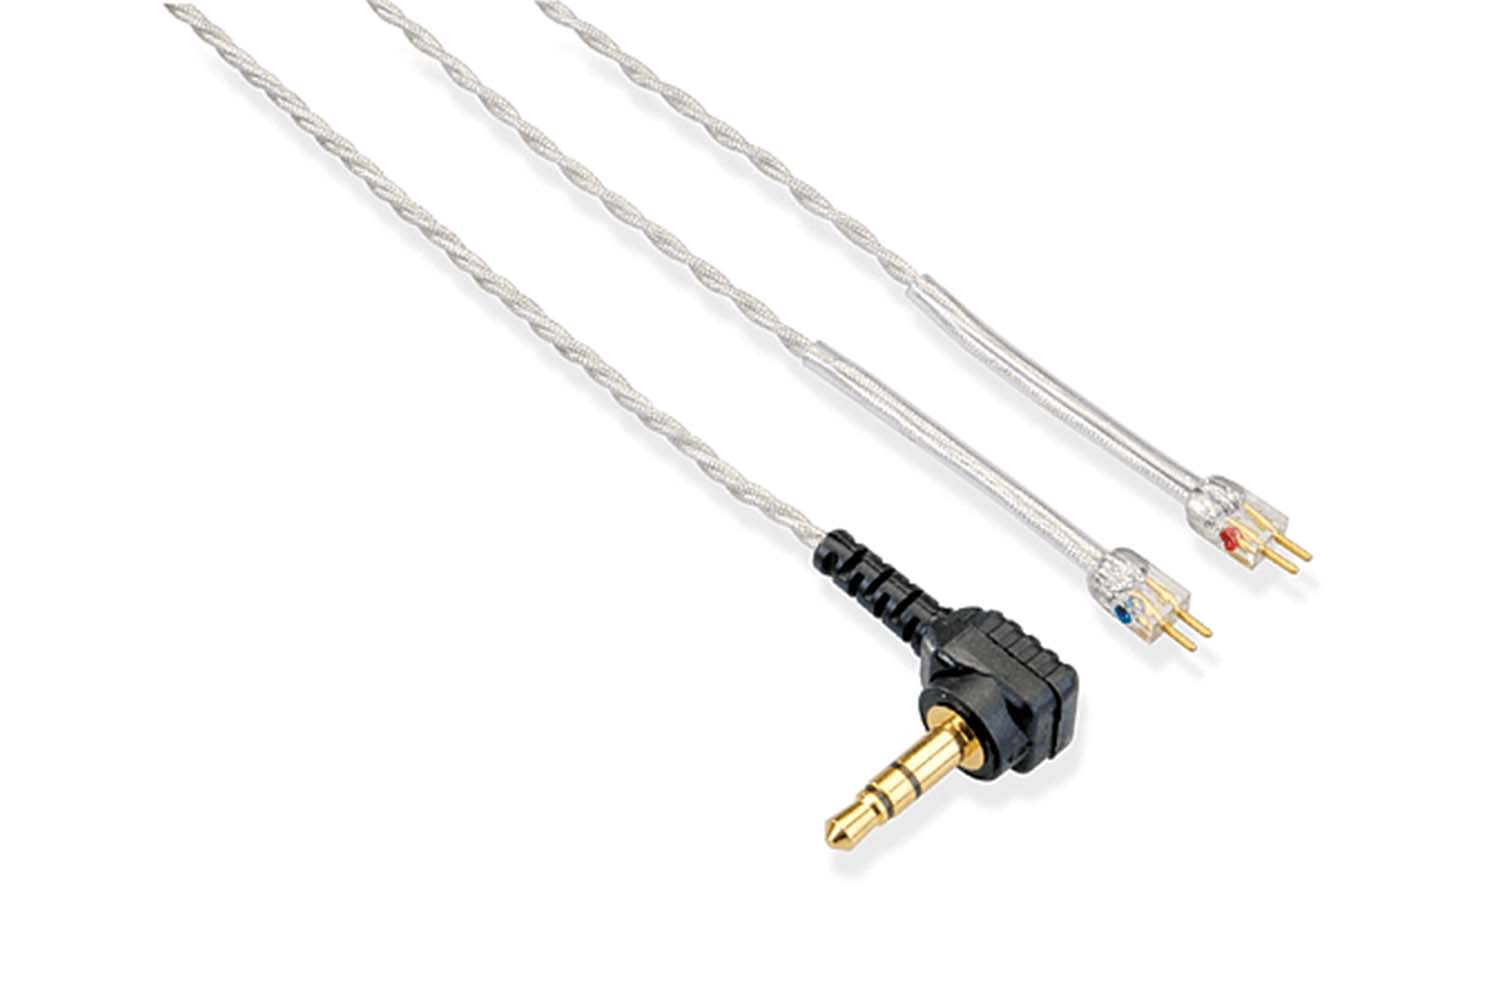 EPIC 2-PIN kabel klart